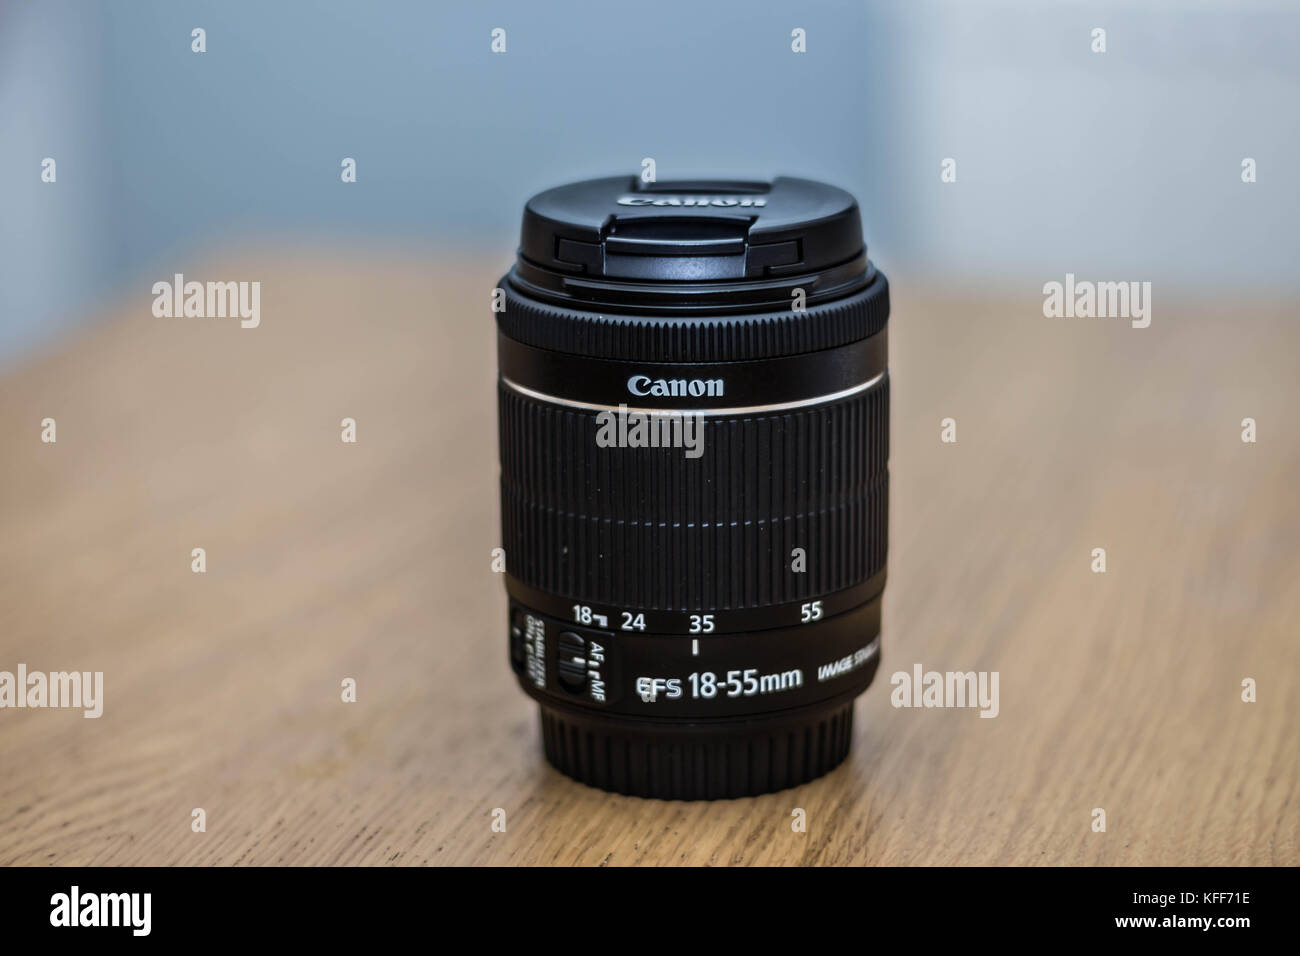 Canon EF-S 18-55mm Lente stm en una tabla con un fondo borroso Foto de stock